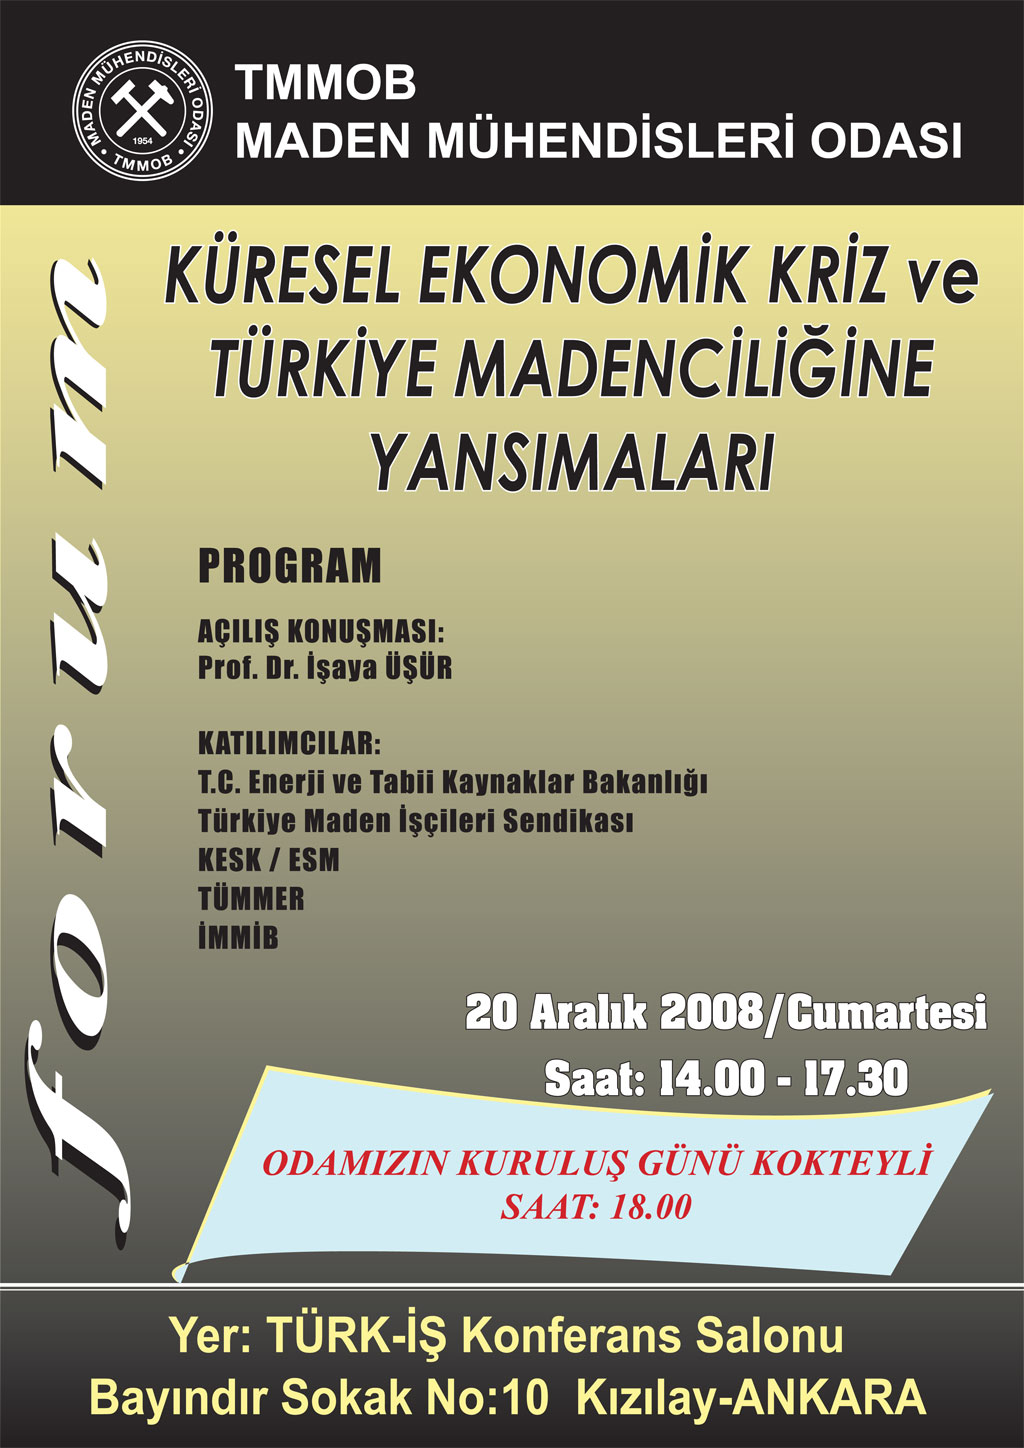 “Küresel Ekonomik Kriz Ve Türkiye Madenciliğine Yansımaları” konulu Forum Ve Odamız Kuruluş Günü Kokteyli 